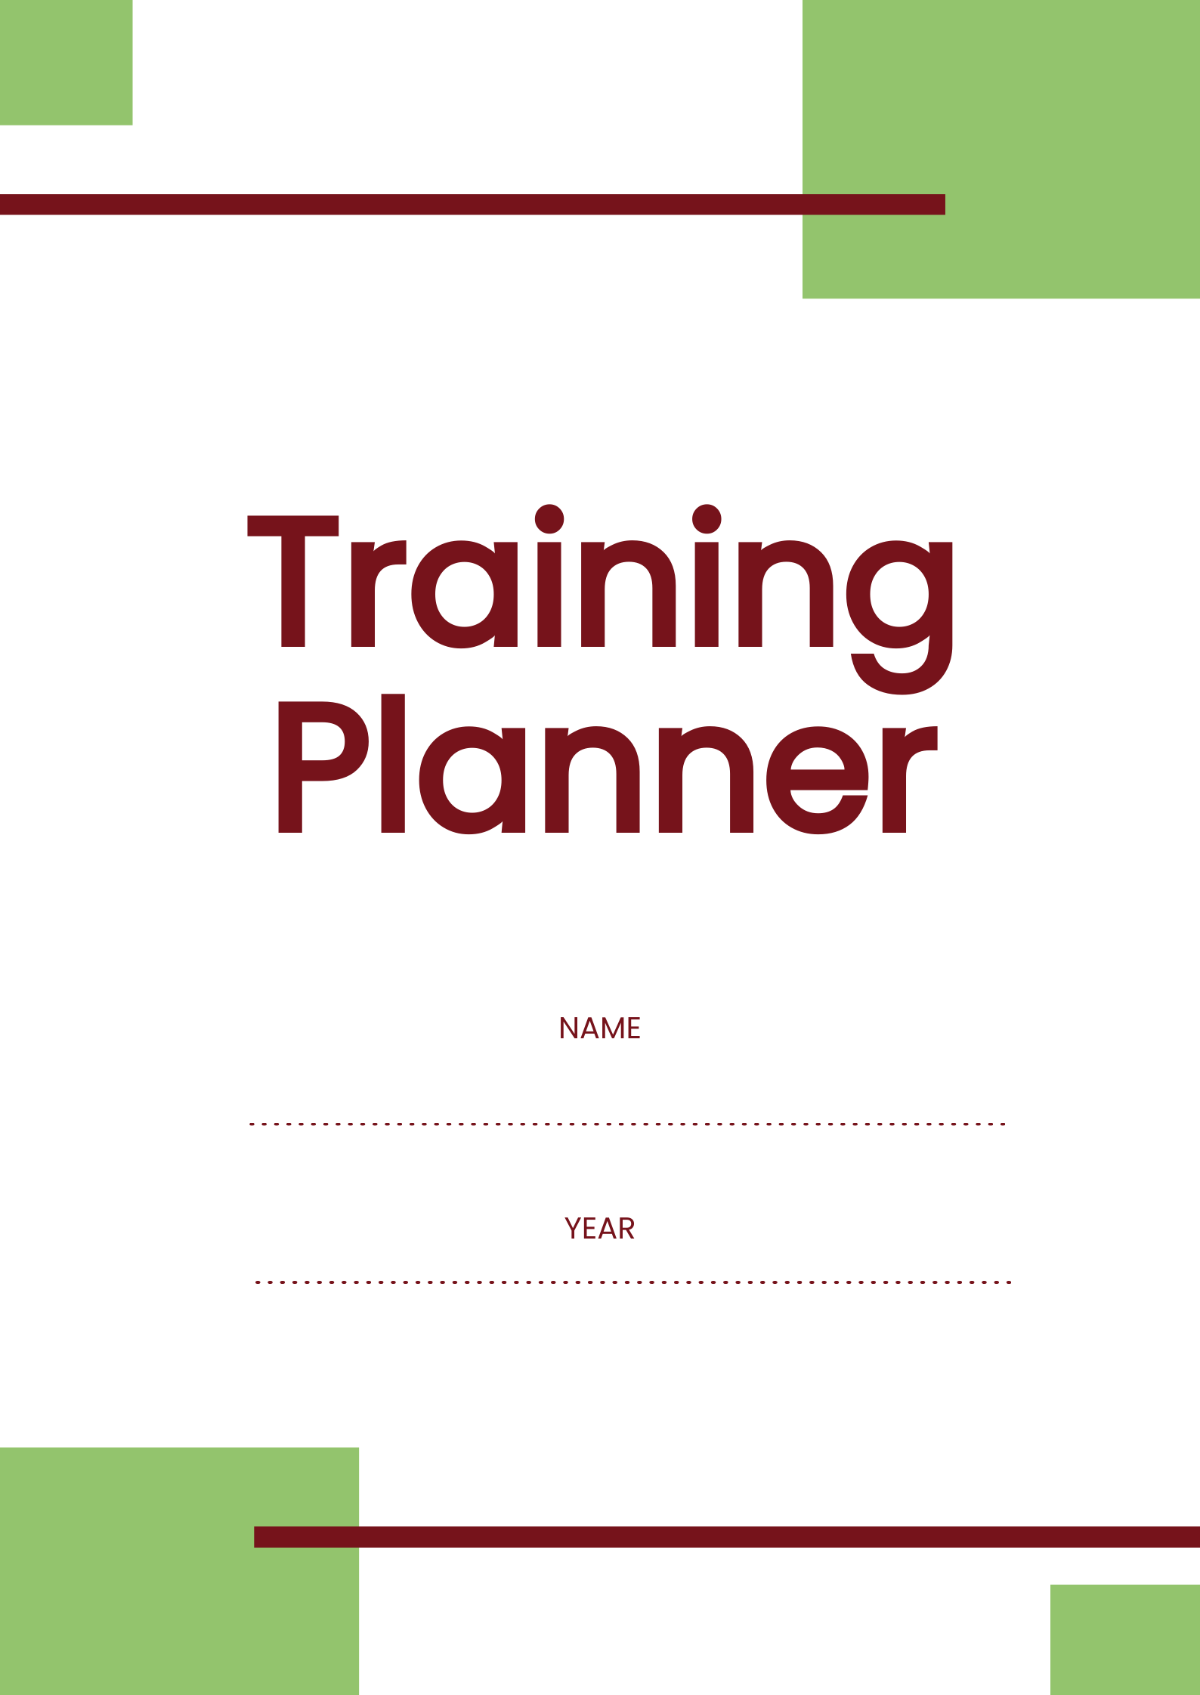 Sample Training Planner